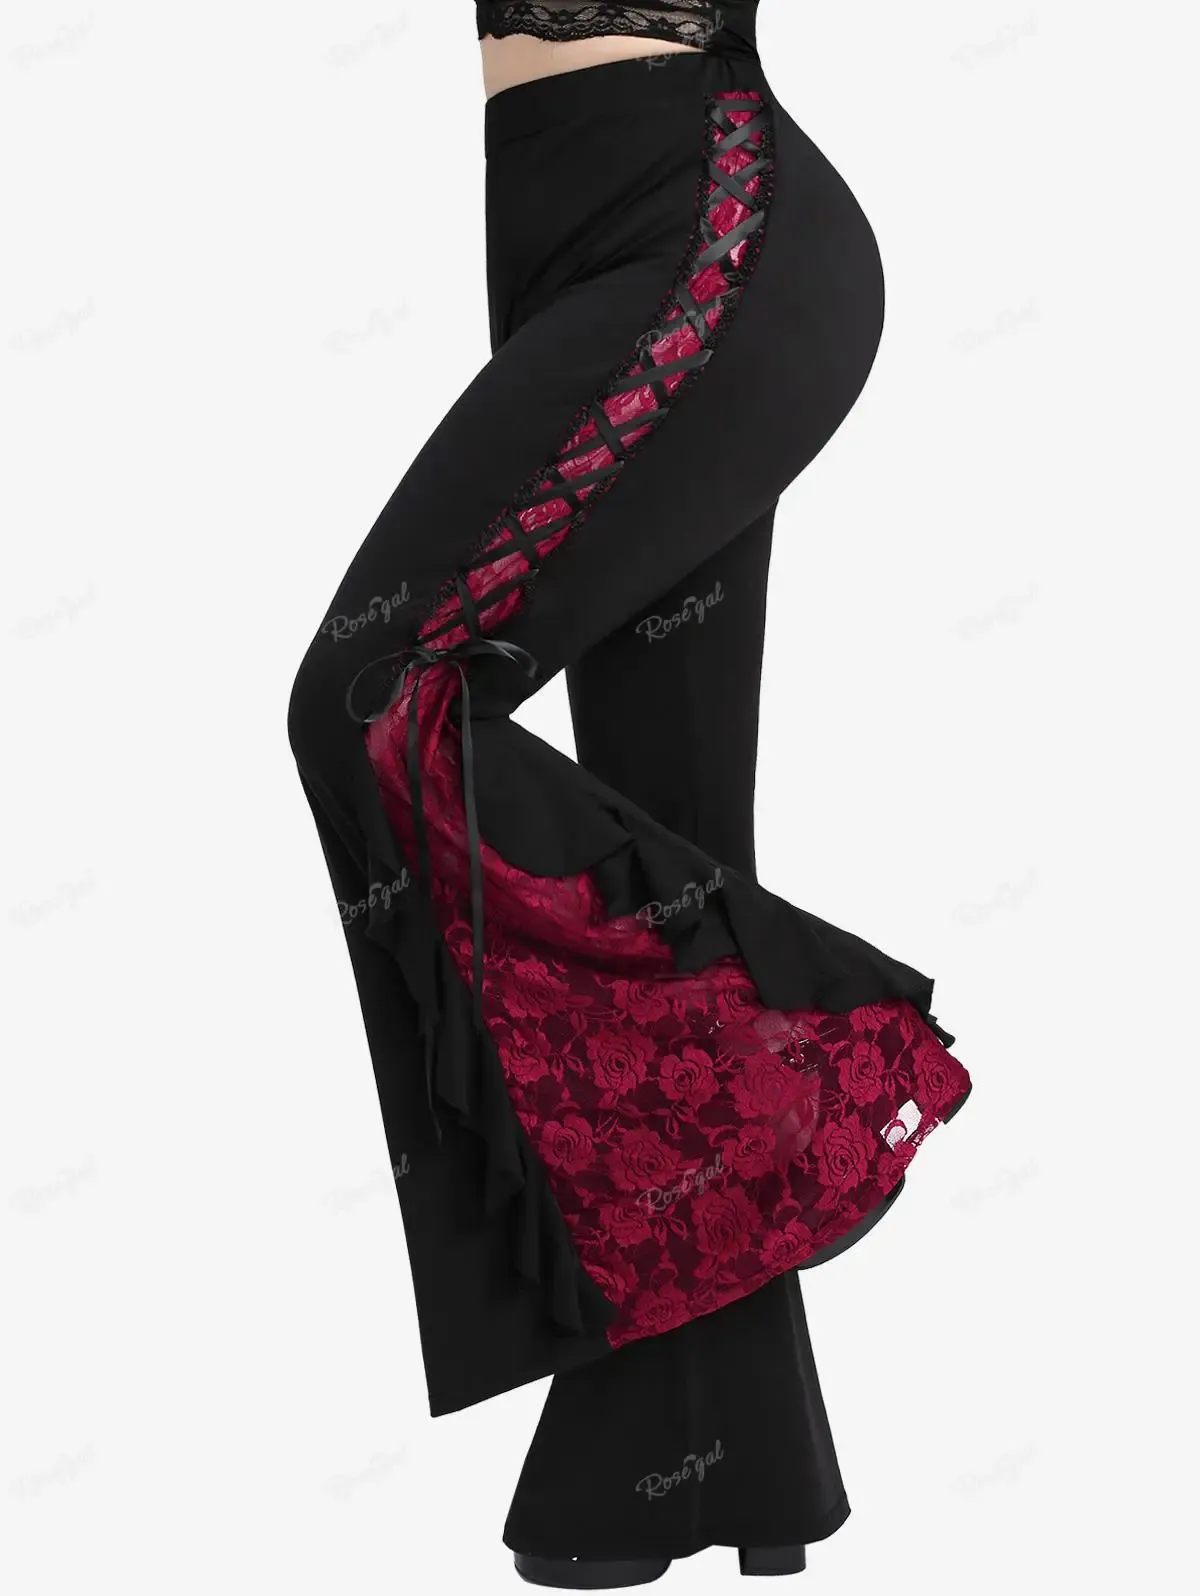 Брюки ROSEGAL, готические розовые кружевные вставки на шнуровке, с оборками, расклешенные брюки, женские уличные брюки с эластичной резинкой на талии, расклешенные брюки с цветными блоками